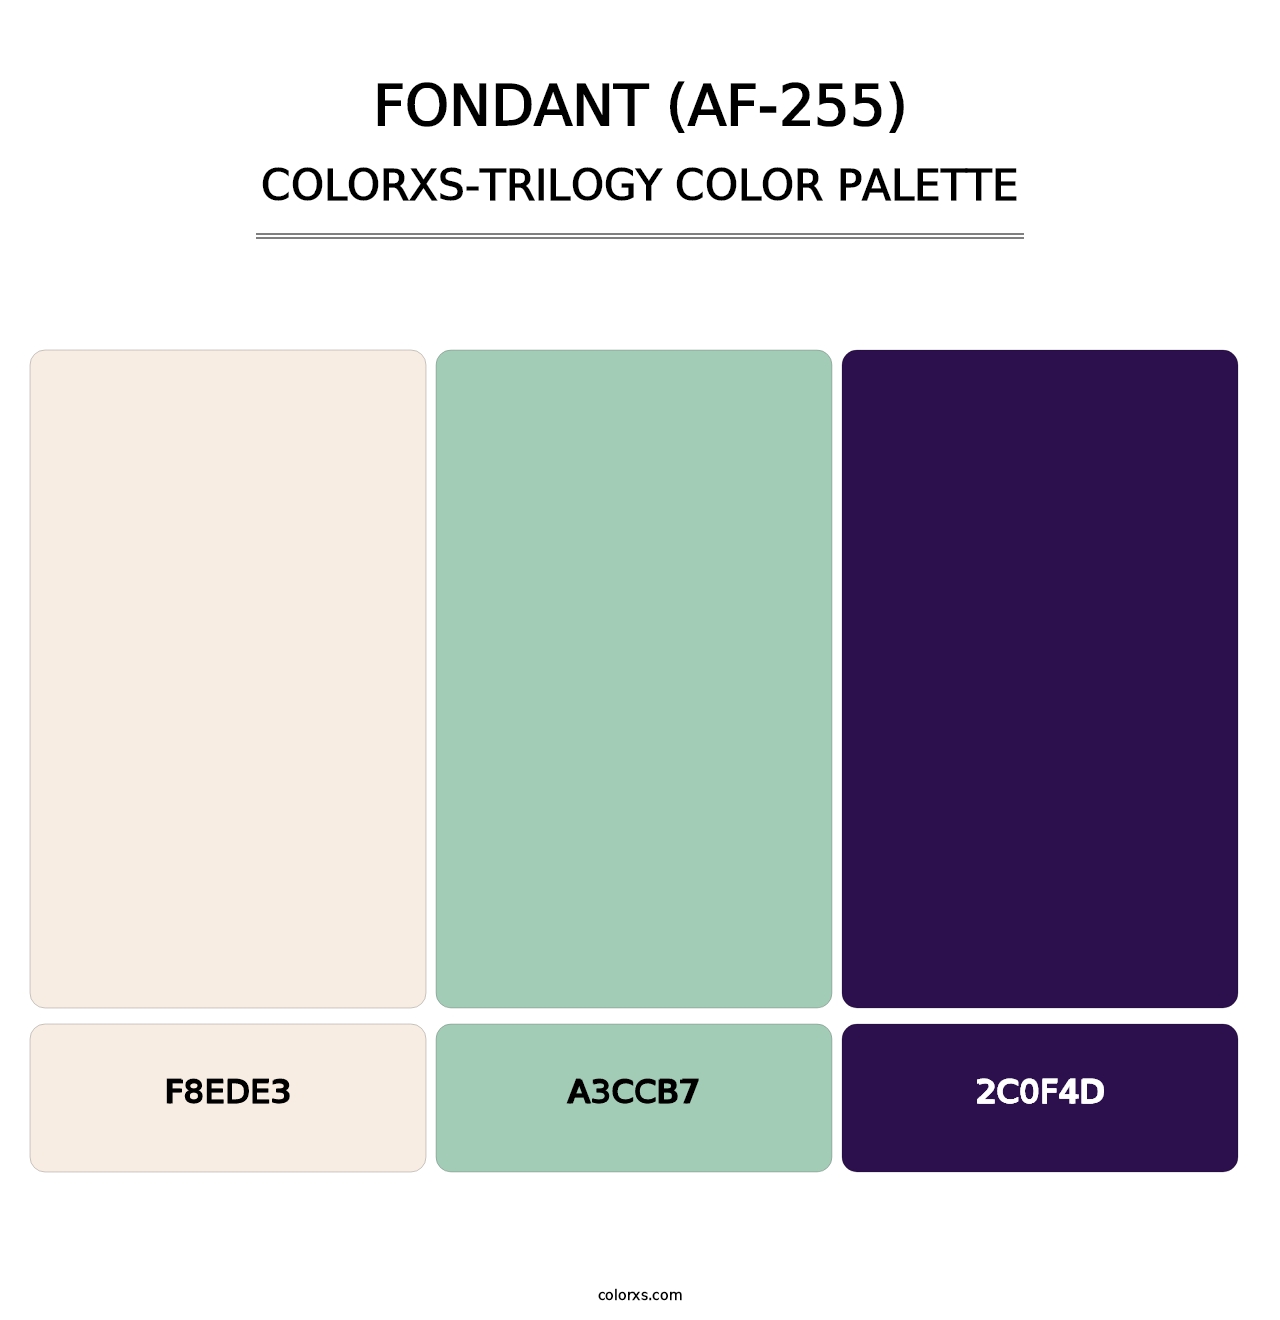 Fondant (AF-255) - Colorxs Trilogy Palette